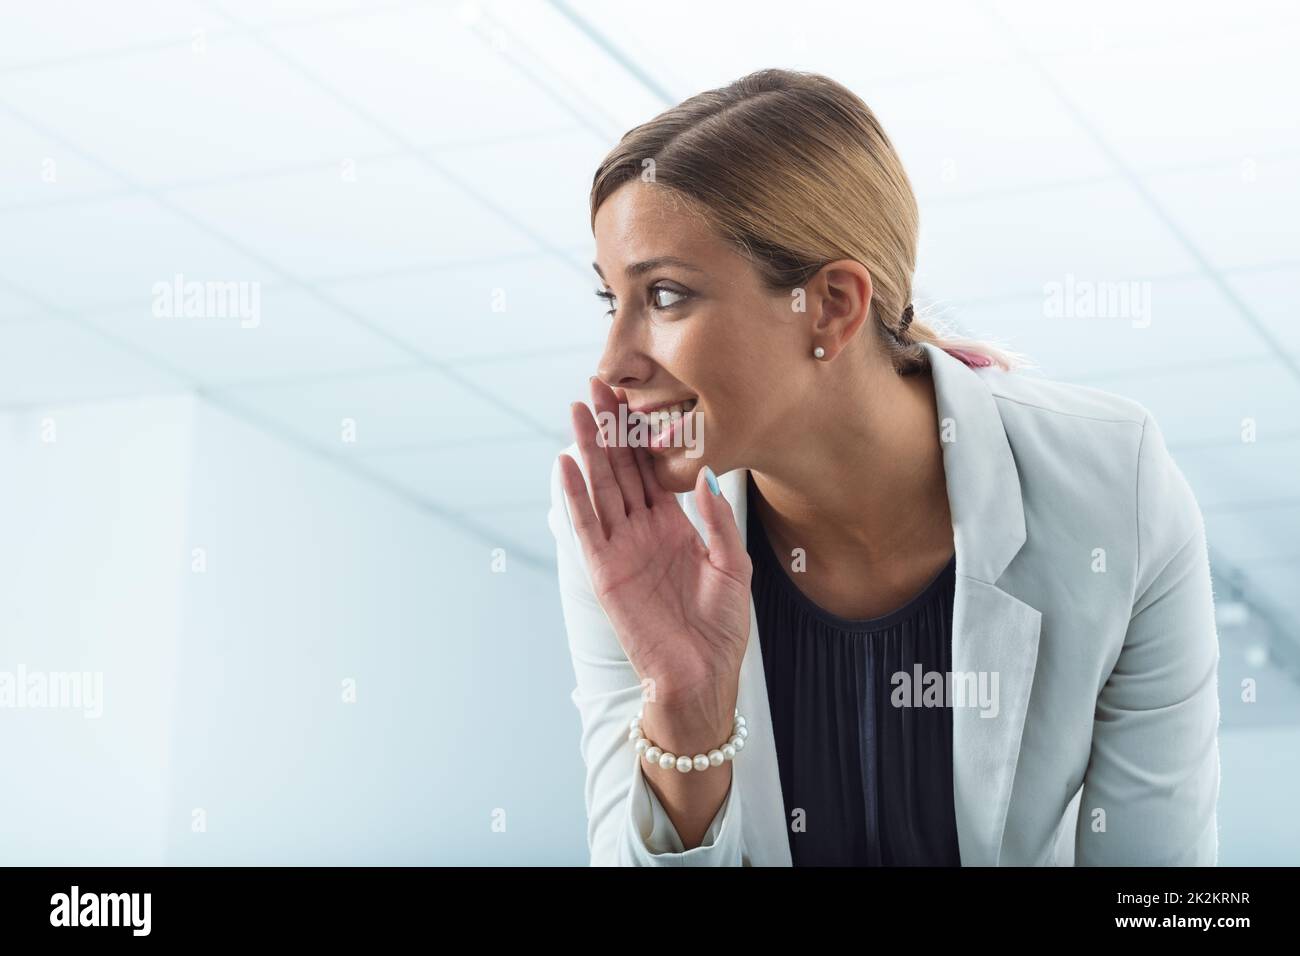 office worker revealing secrets Stock Photo